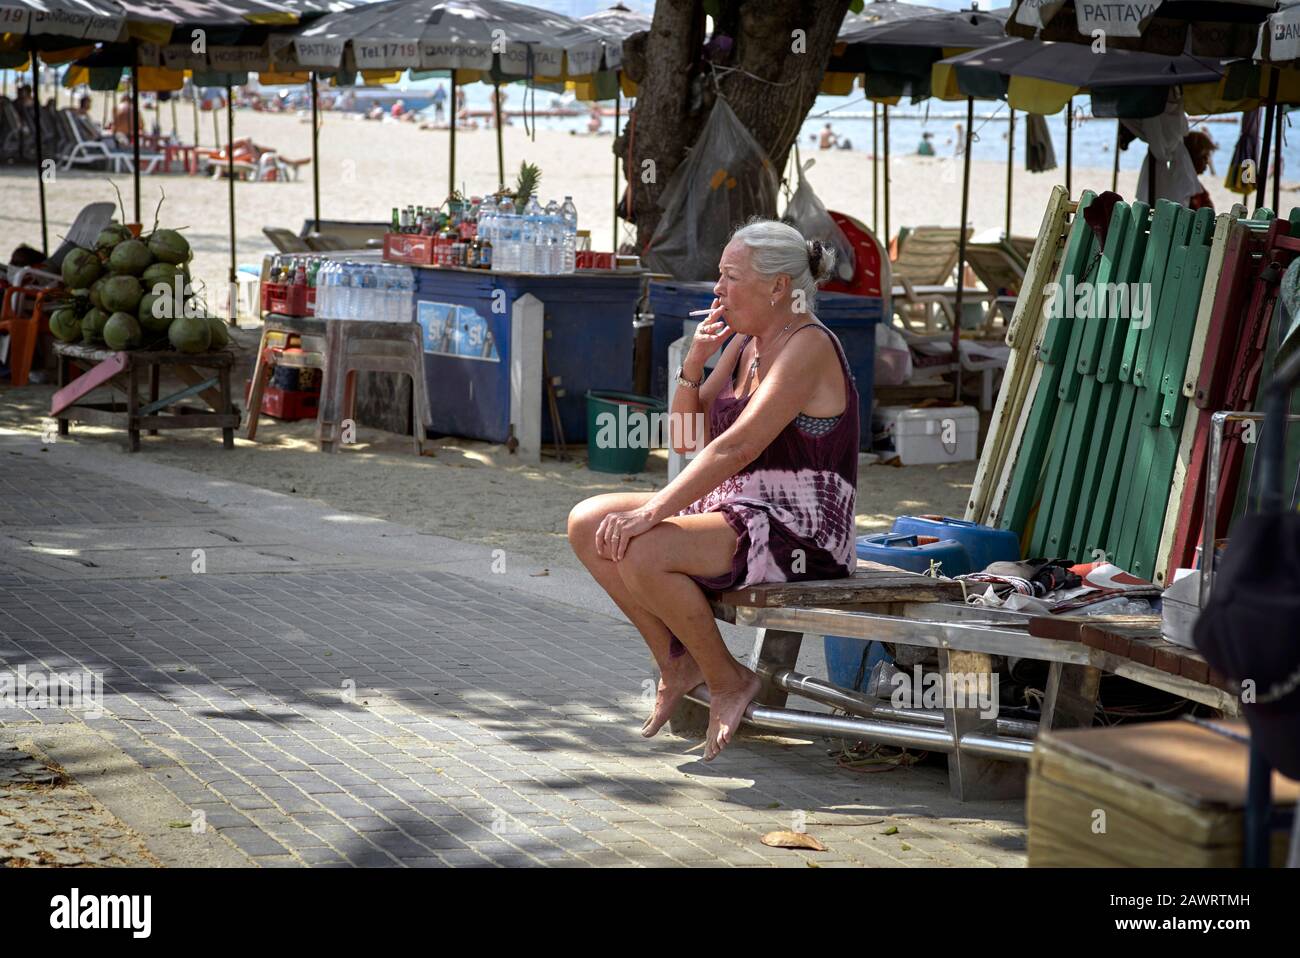 Woman smoking a cigarette outside ; Mature woman smoker Stock Photo